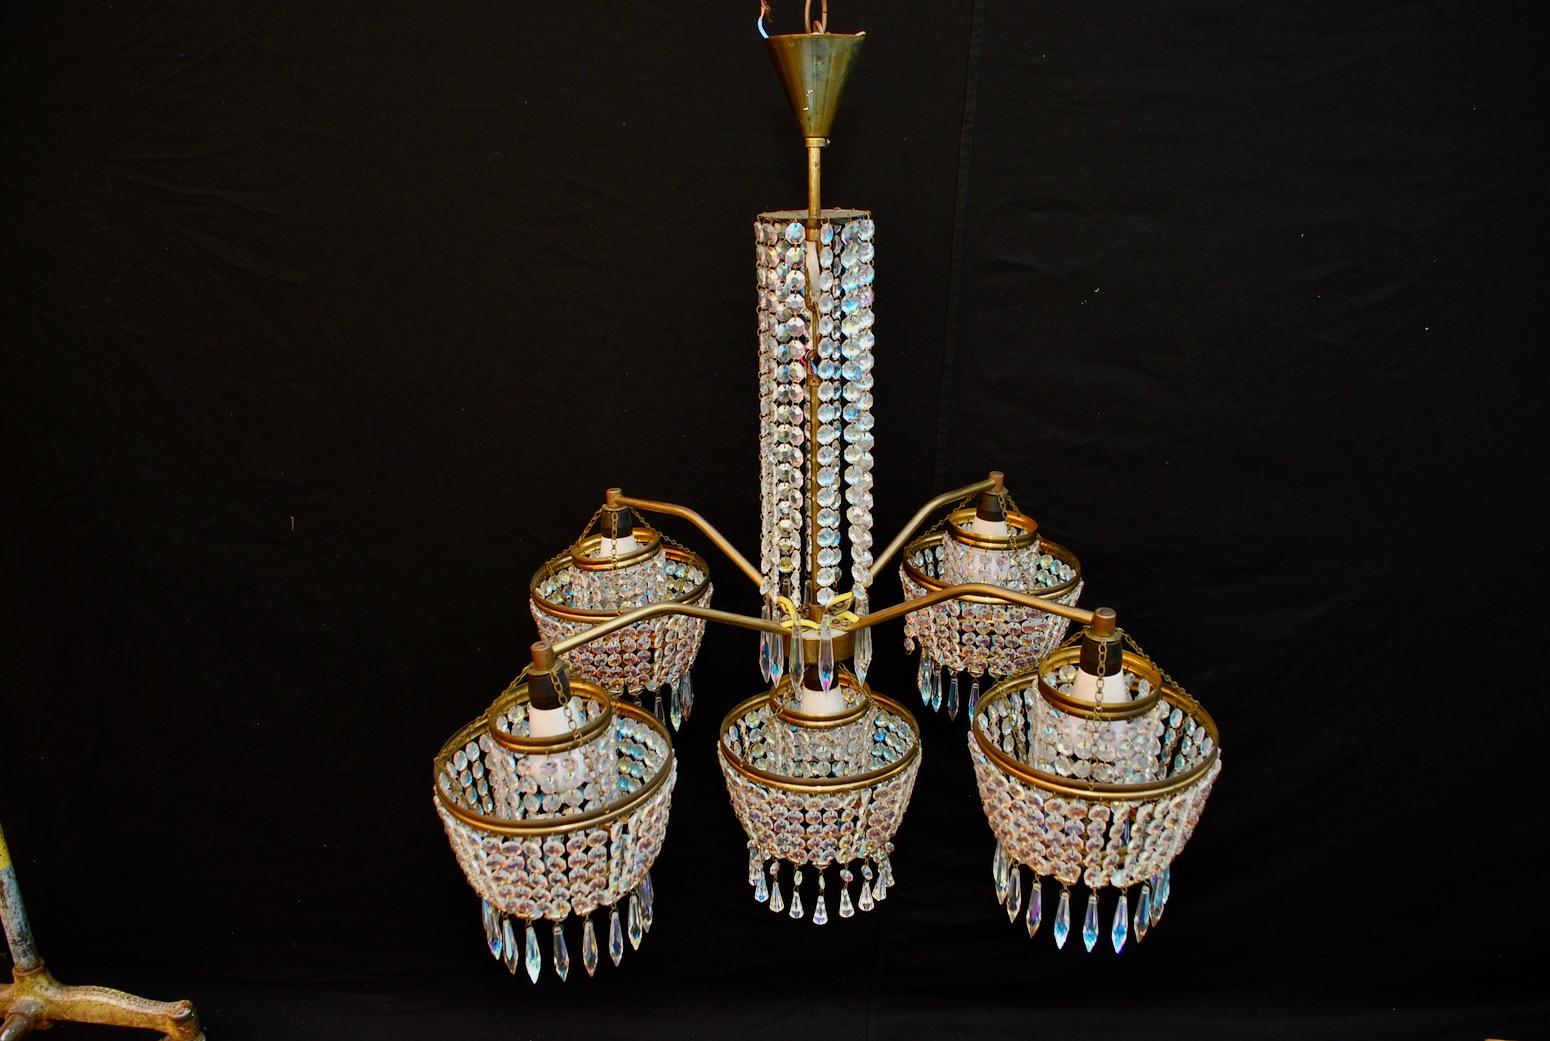 1960s chandeliers